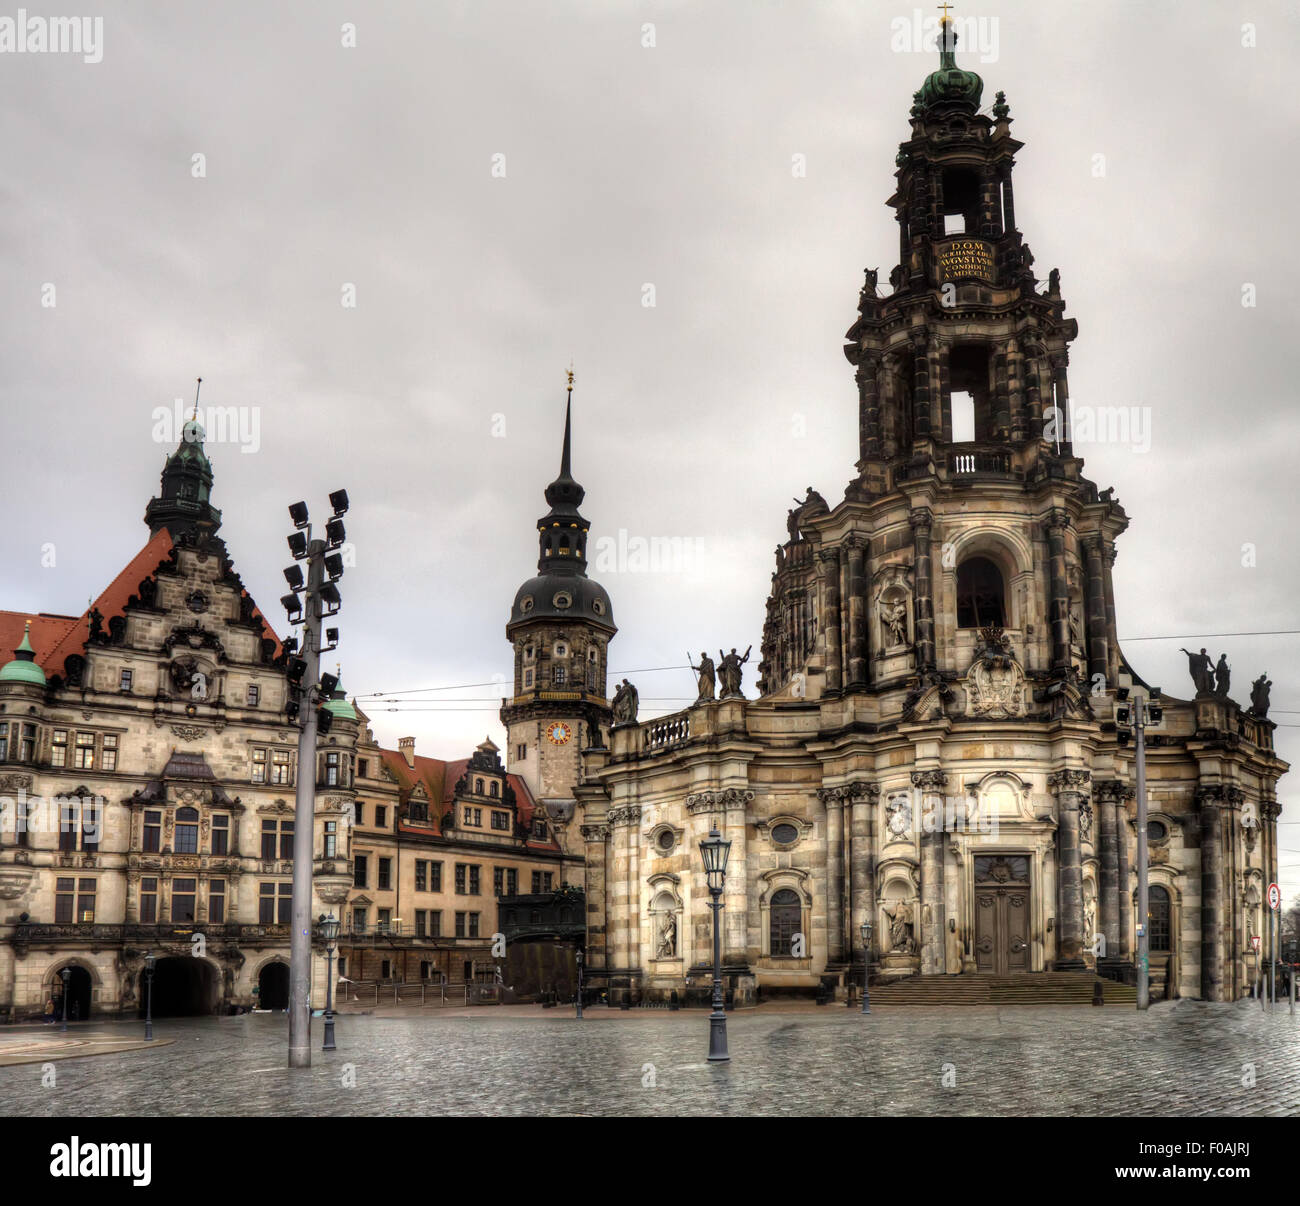 La antigua ciudad de Dresden, Alemania. El centro cultural e histórico de  Europa Fotografía de stock - Alamy